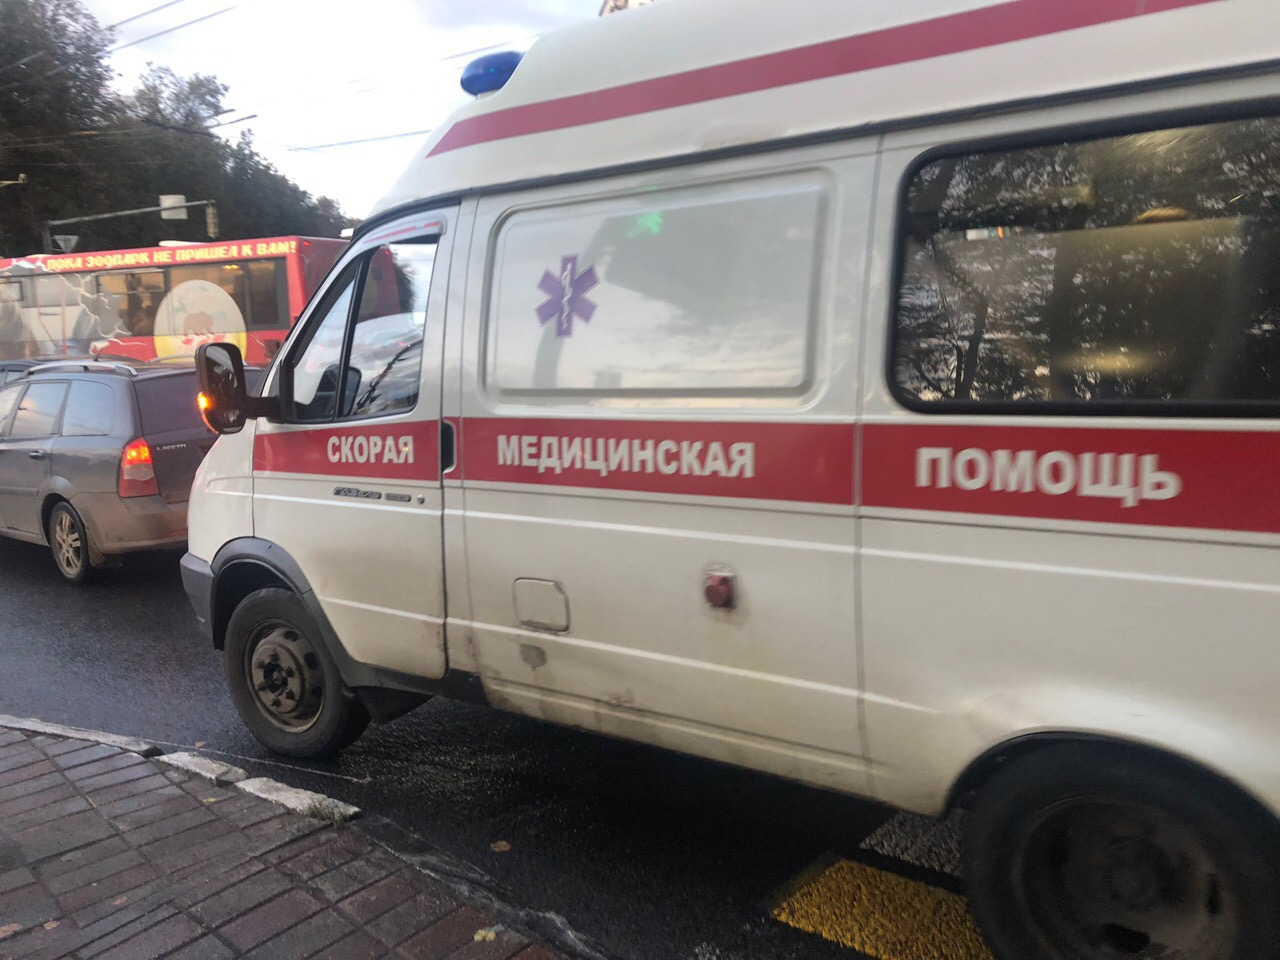 Удар был смертельным: подробности страшного ДТП под Ярославлем